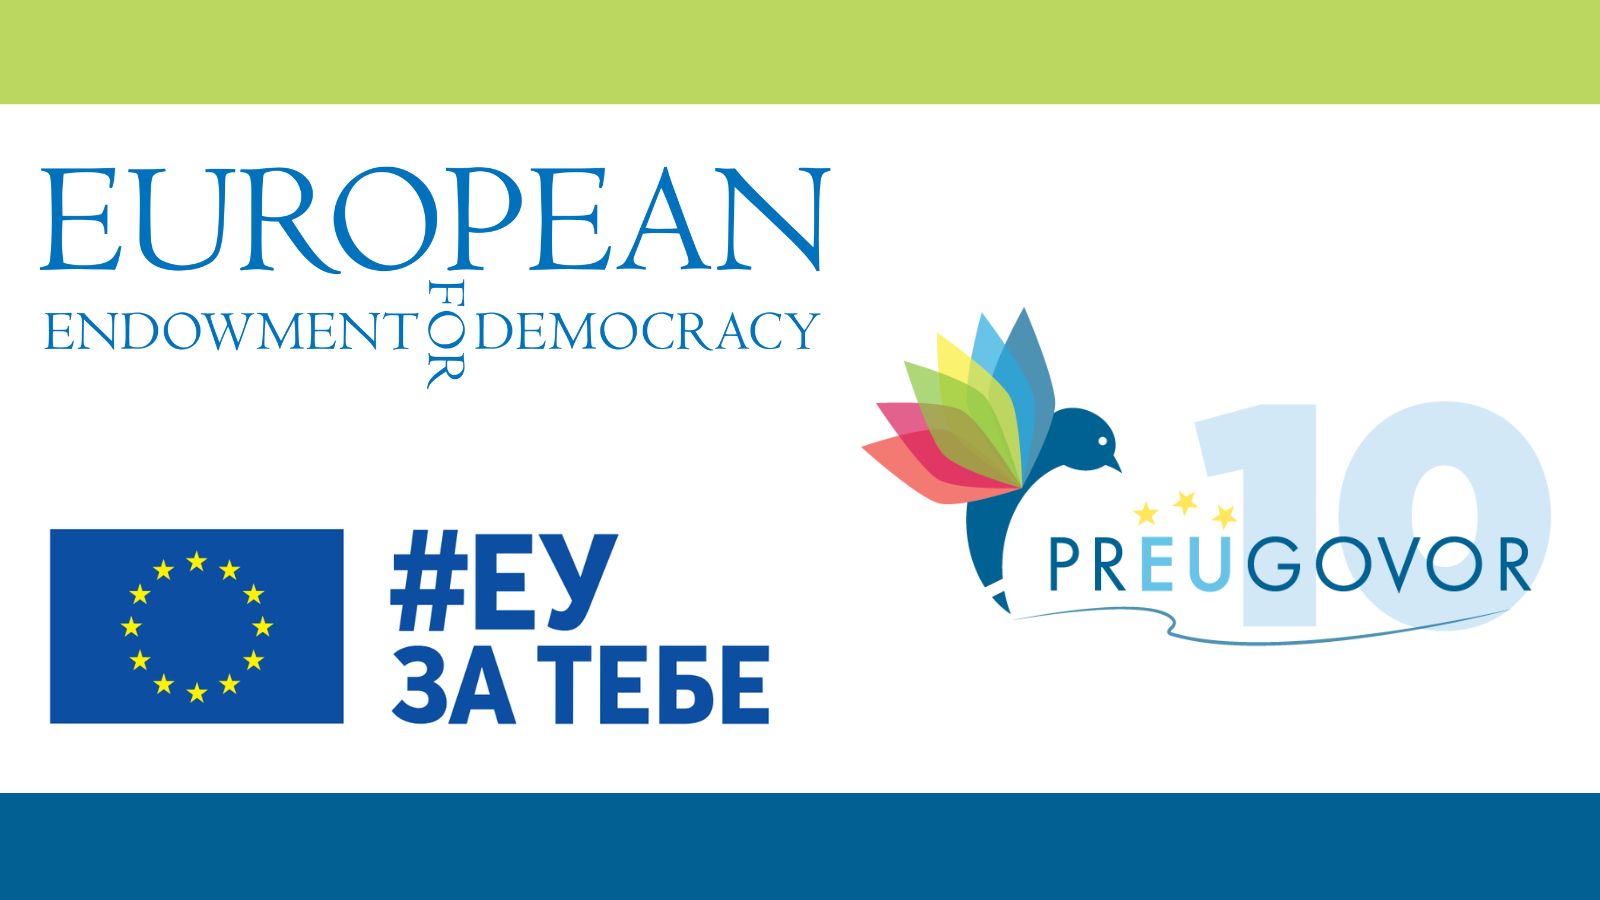 PrEUgovor nastavlja da prati reforme u Klasteru 1 uz podršku Evropske zadužbine za demokratiju (EED)